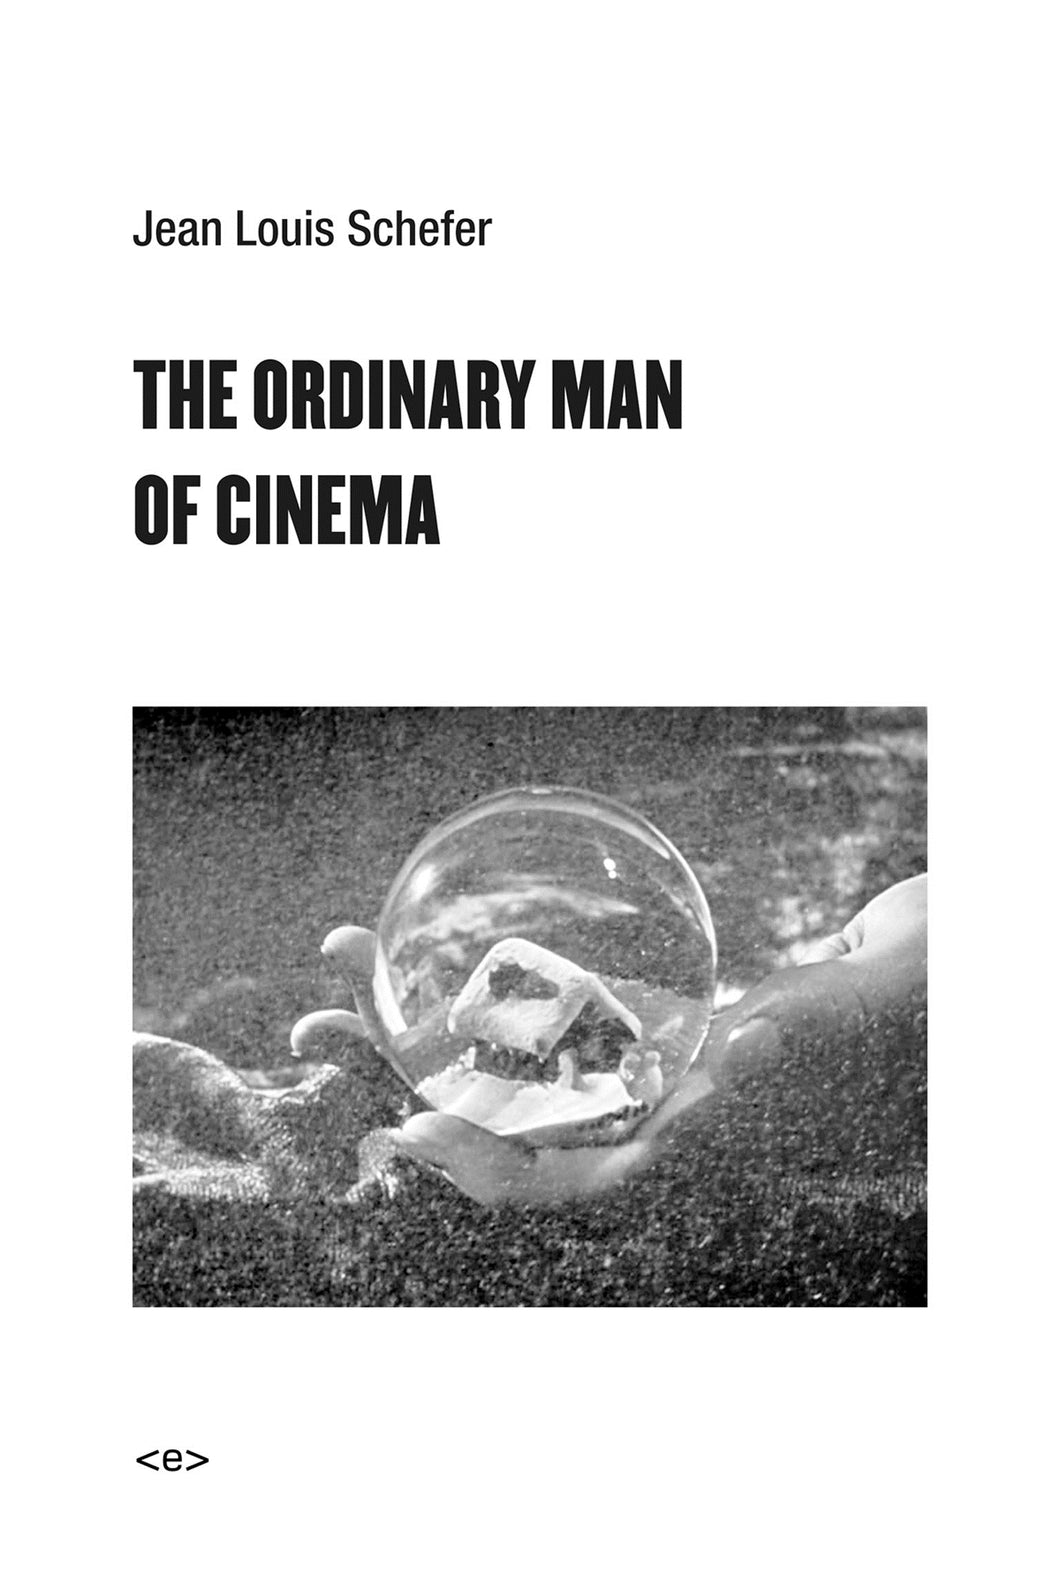 The Ordinary Man of Cinema ร้านหนังสือและสิ่งของ เป็นร้านหนังสือภาษาอังกฤษหายาก และร้านกาแฟ หรือ บุ๊คคาเฟ่ ตั้งอยู่สุขุมวิท กรุงเทพ